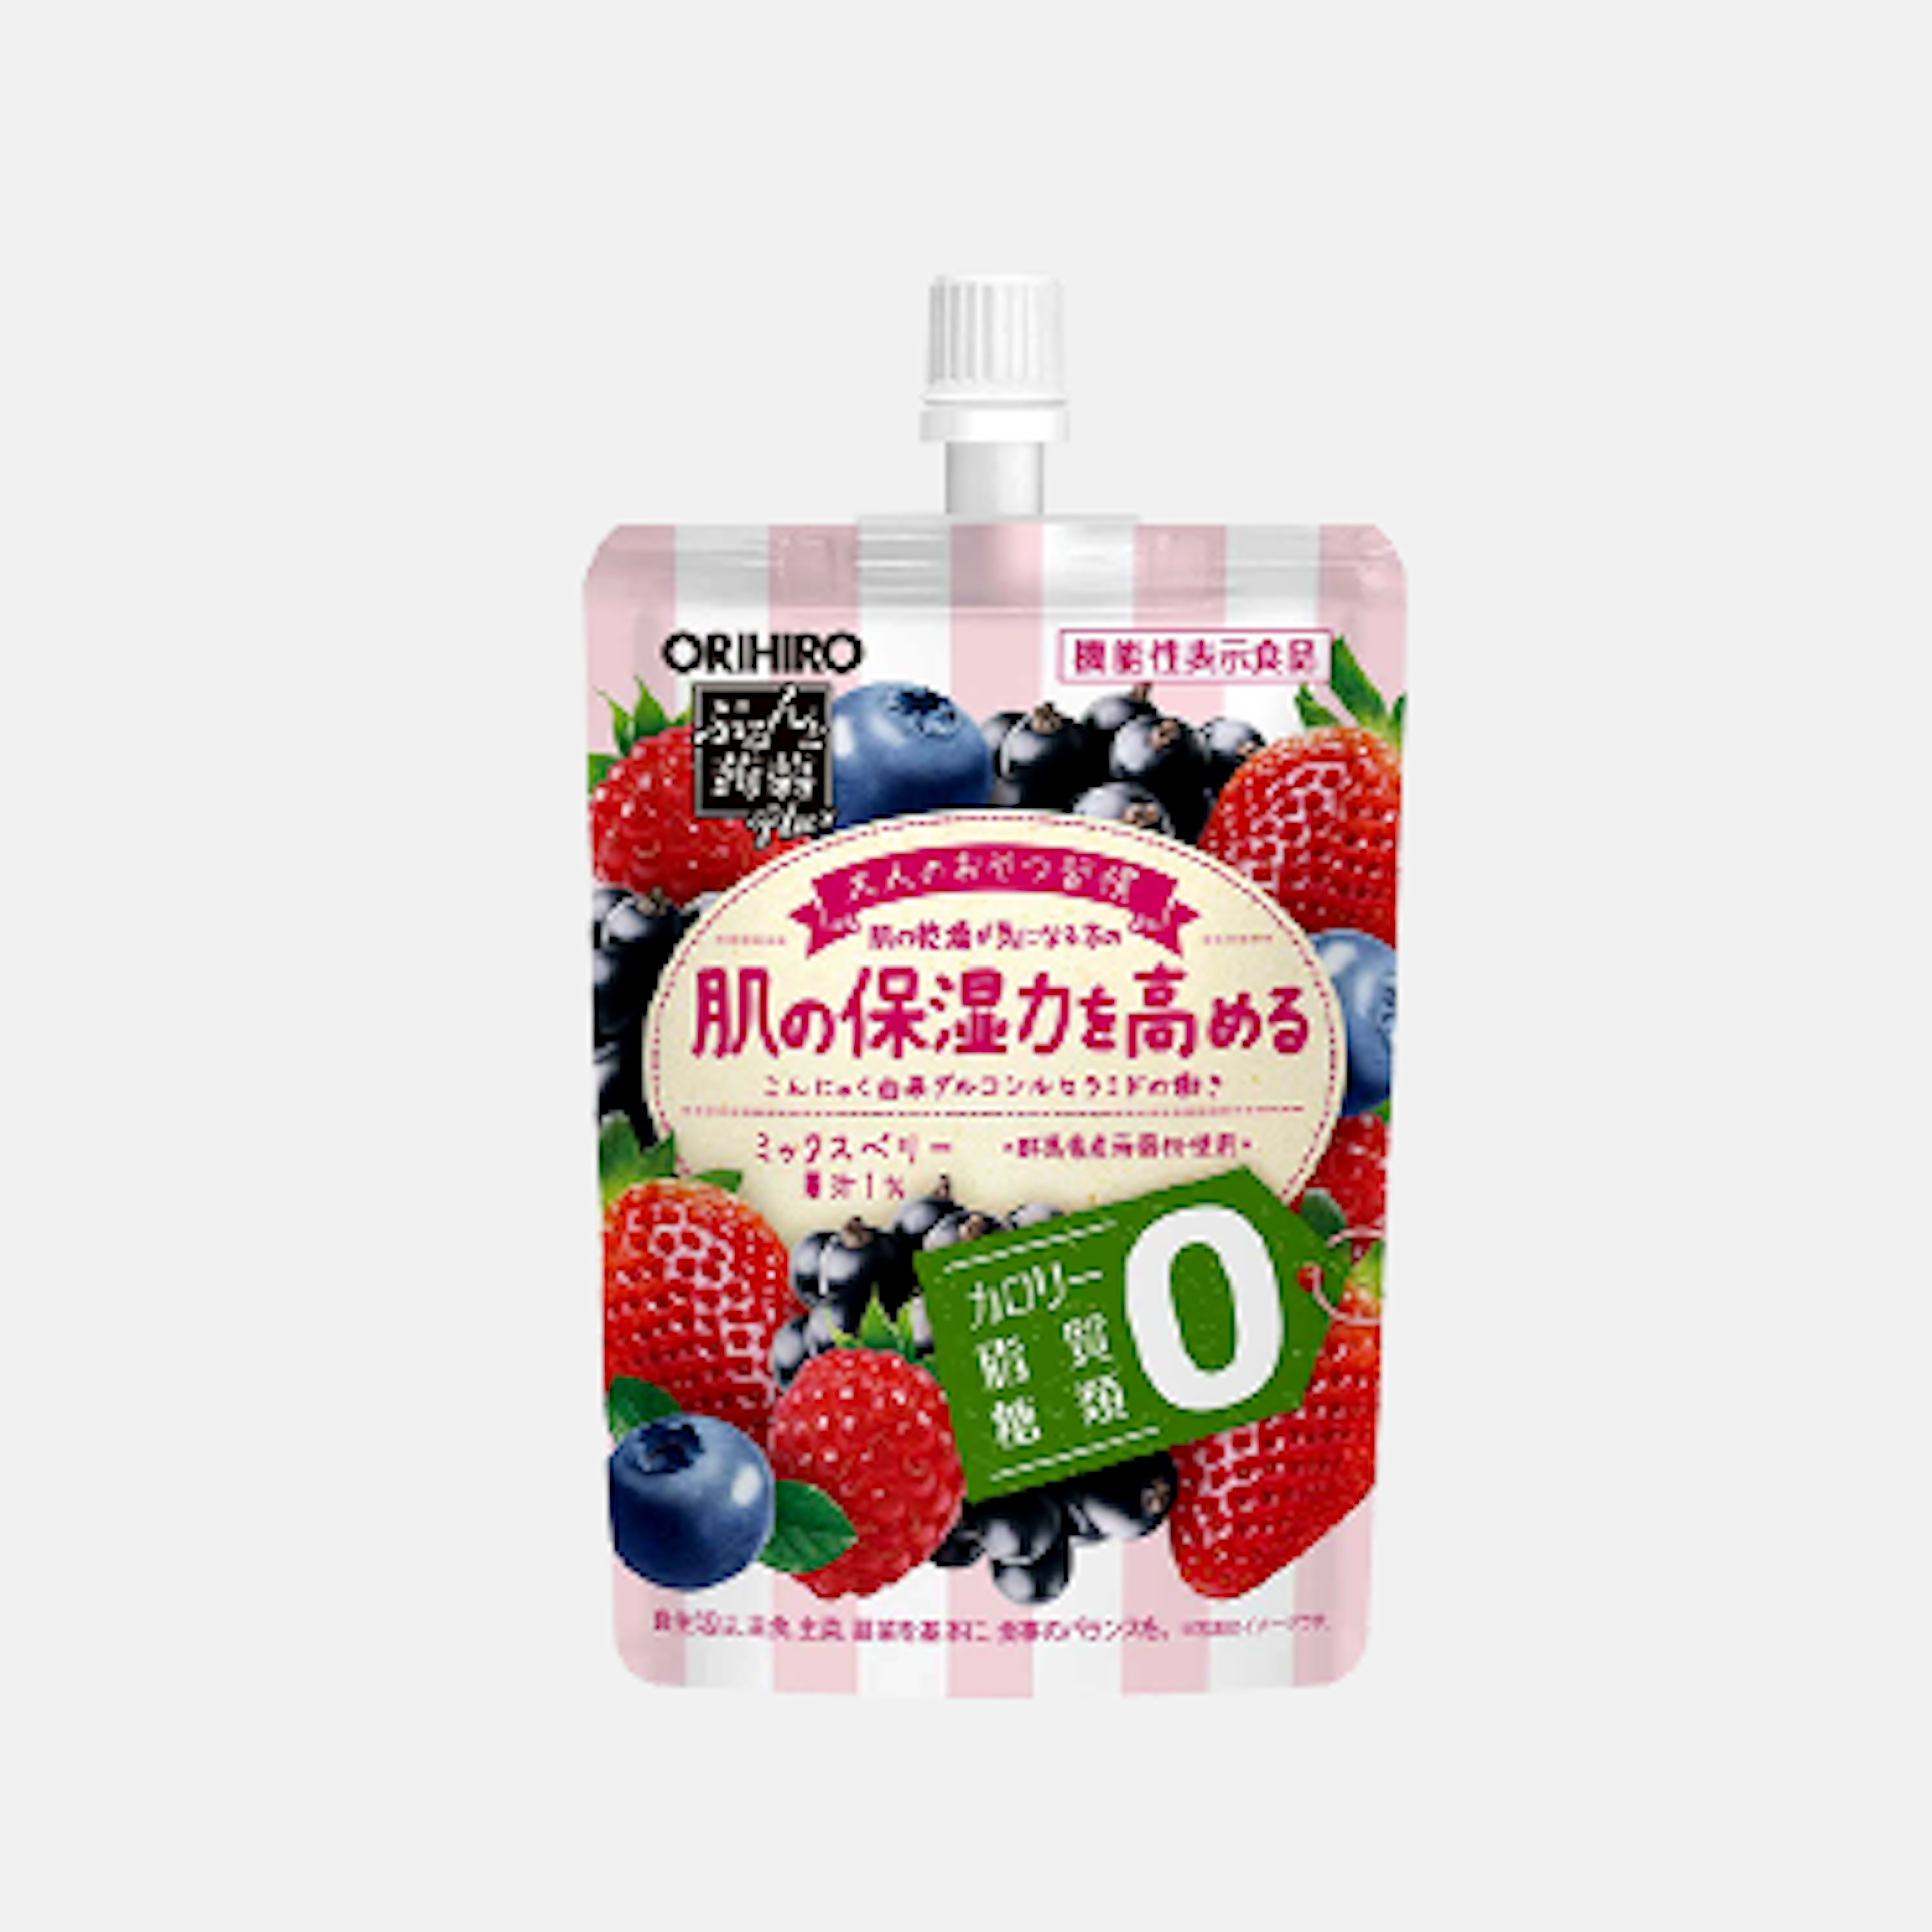 ORIHIRO Puru Puru Konjac Jelly Drink Mischbeeren-Geschmack 130g - Kalorienfreier, gesunder Snack